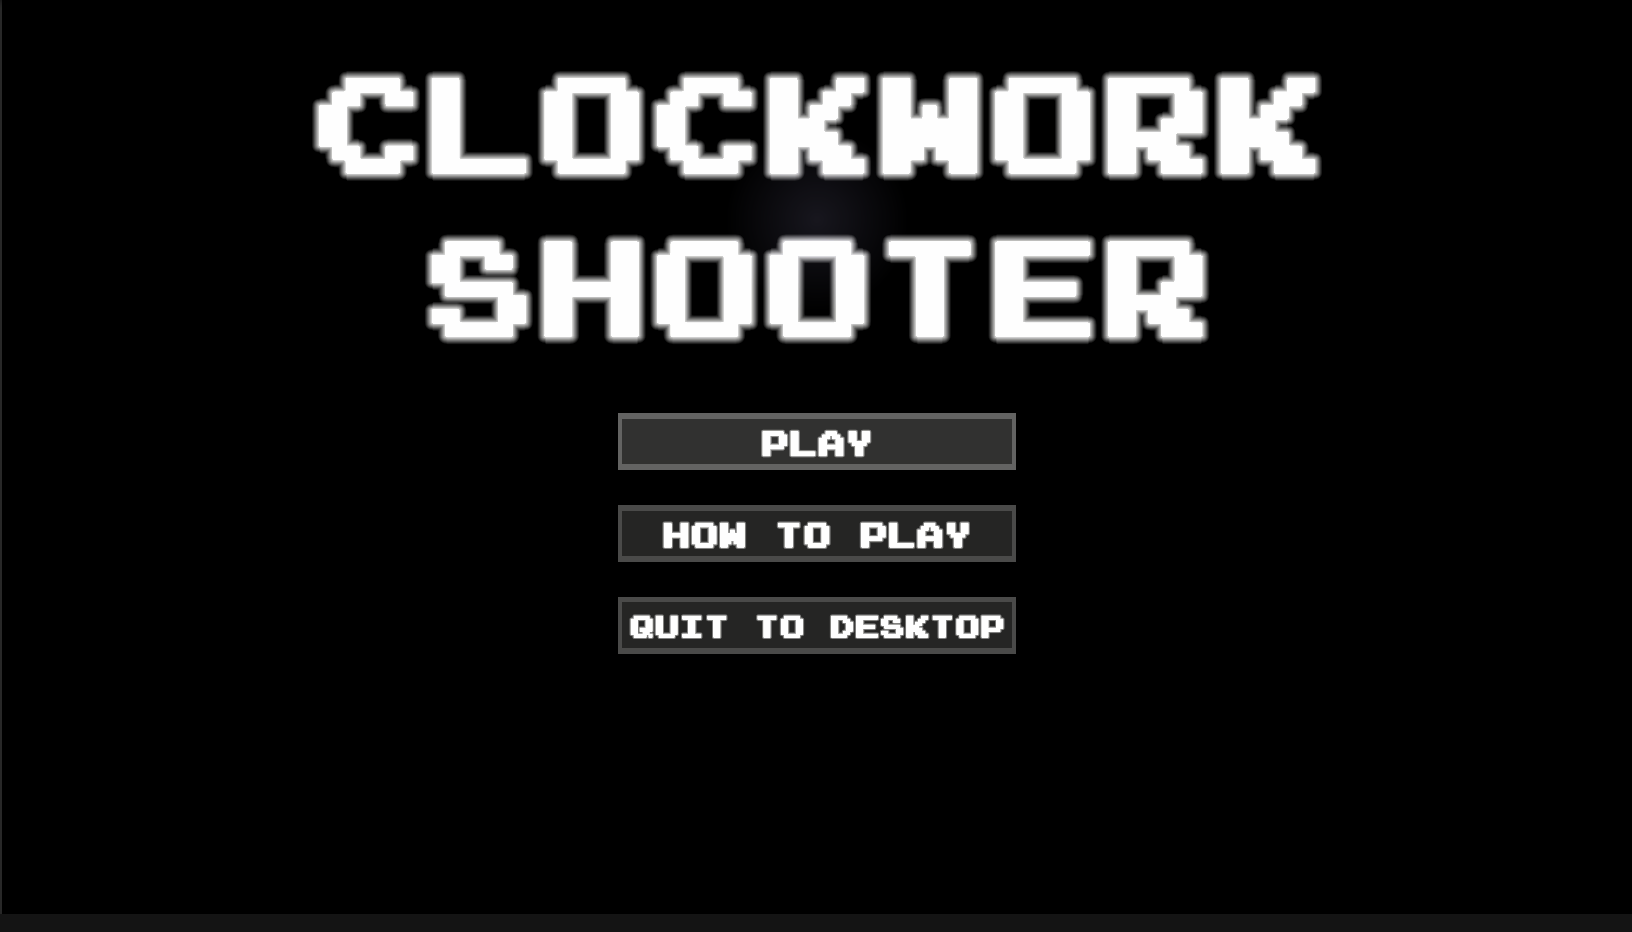 Clockwork Twinstick Shooter